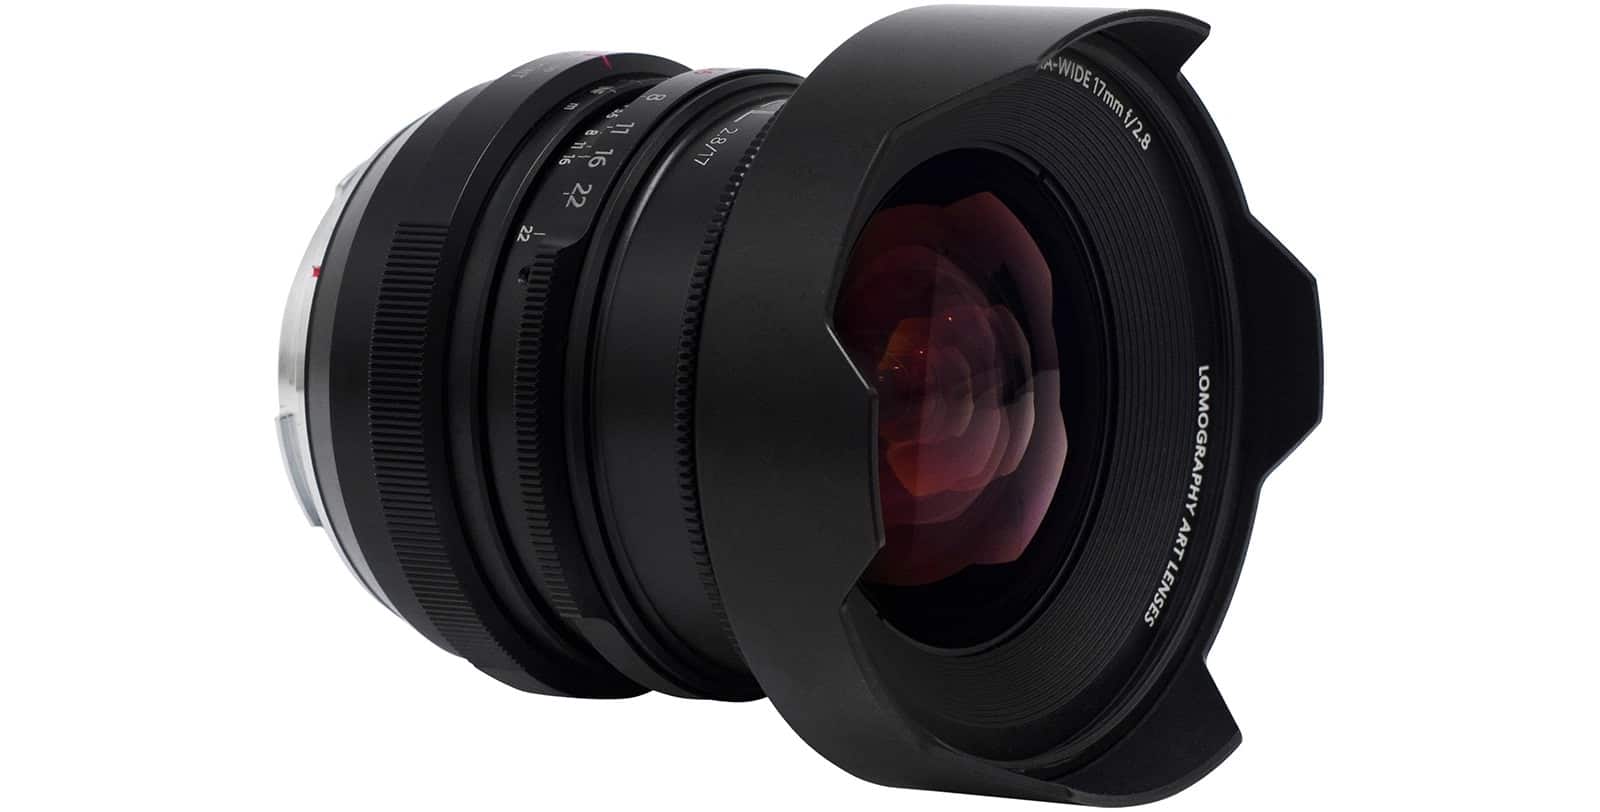 Lomography ra mắt ống kính 17mm F2.8 cho máy ảnh full frame mirrorless